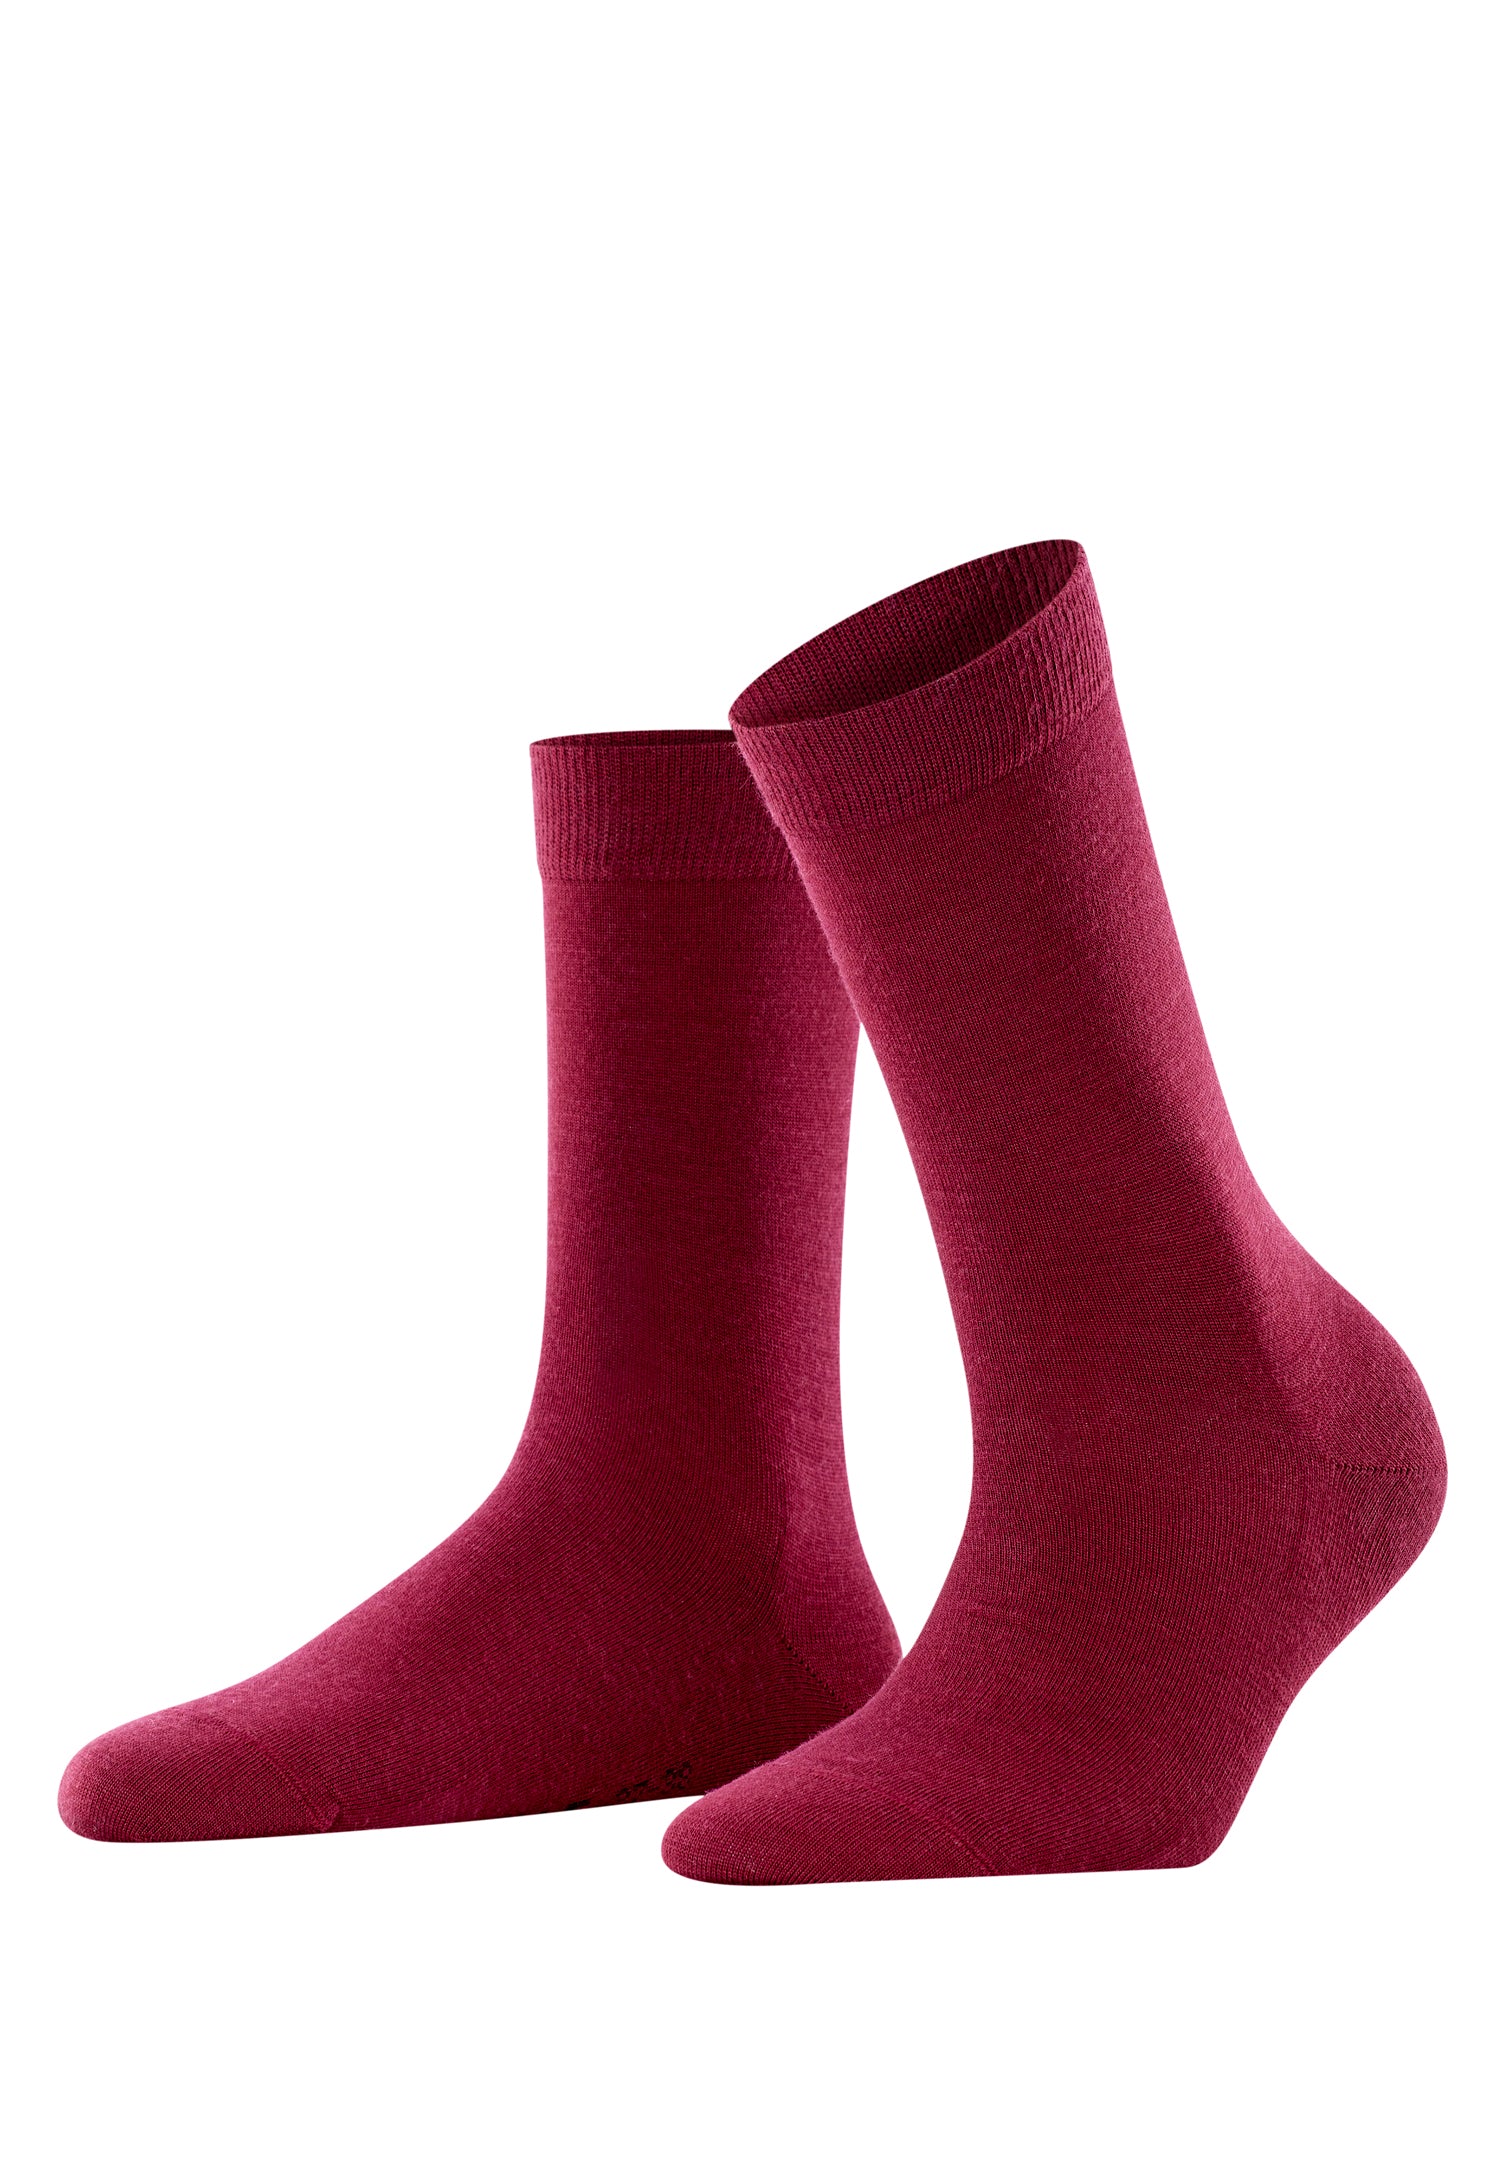 47488 Softmerino Women's Softmerino Wool Sock - 8010 Wine